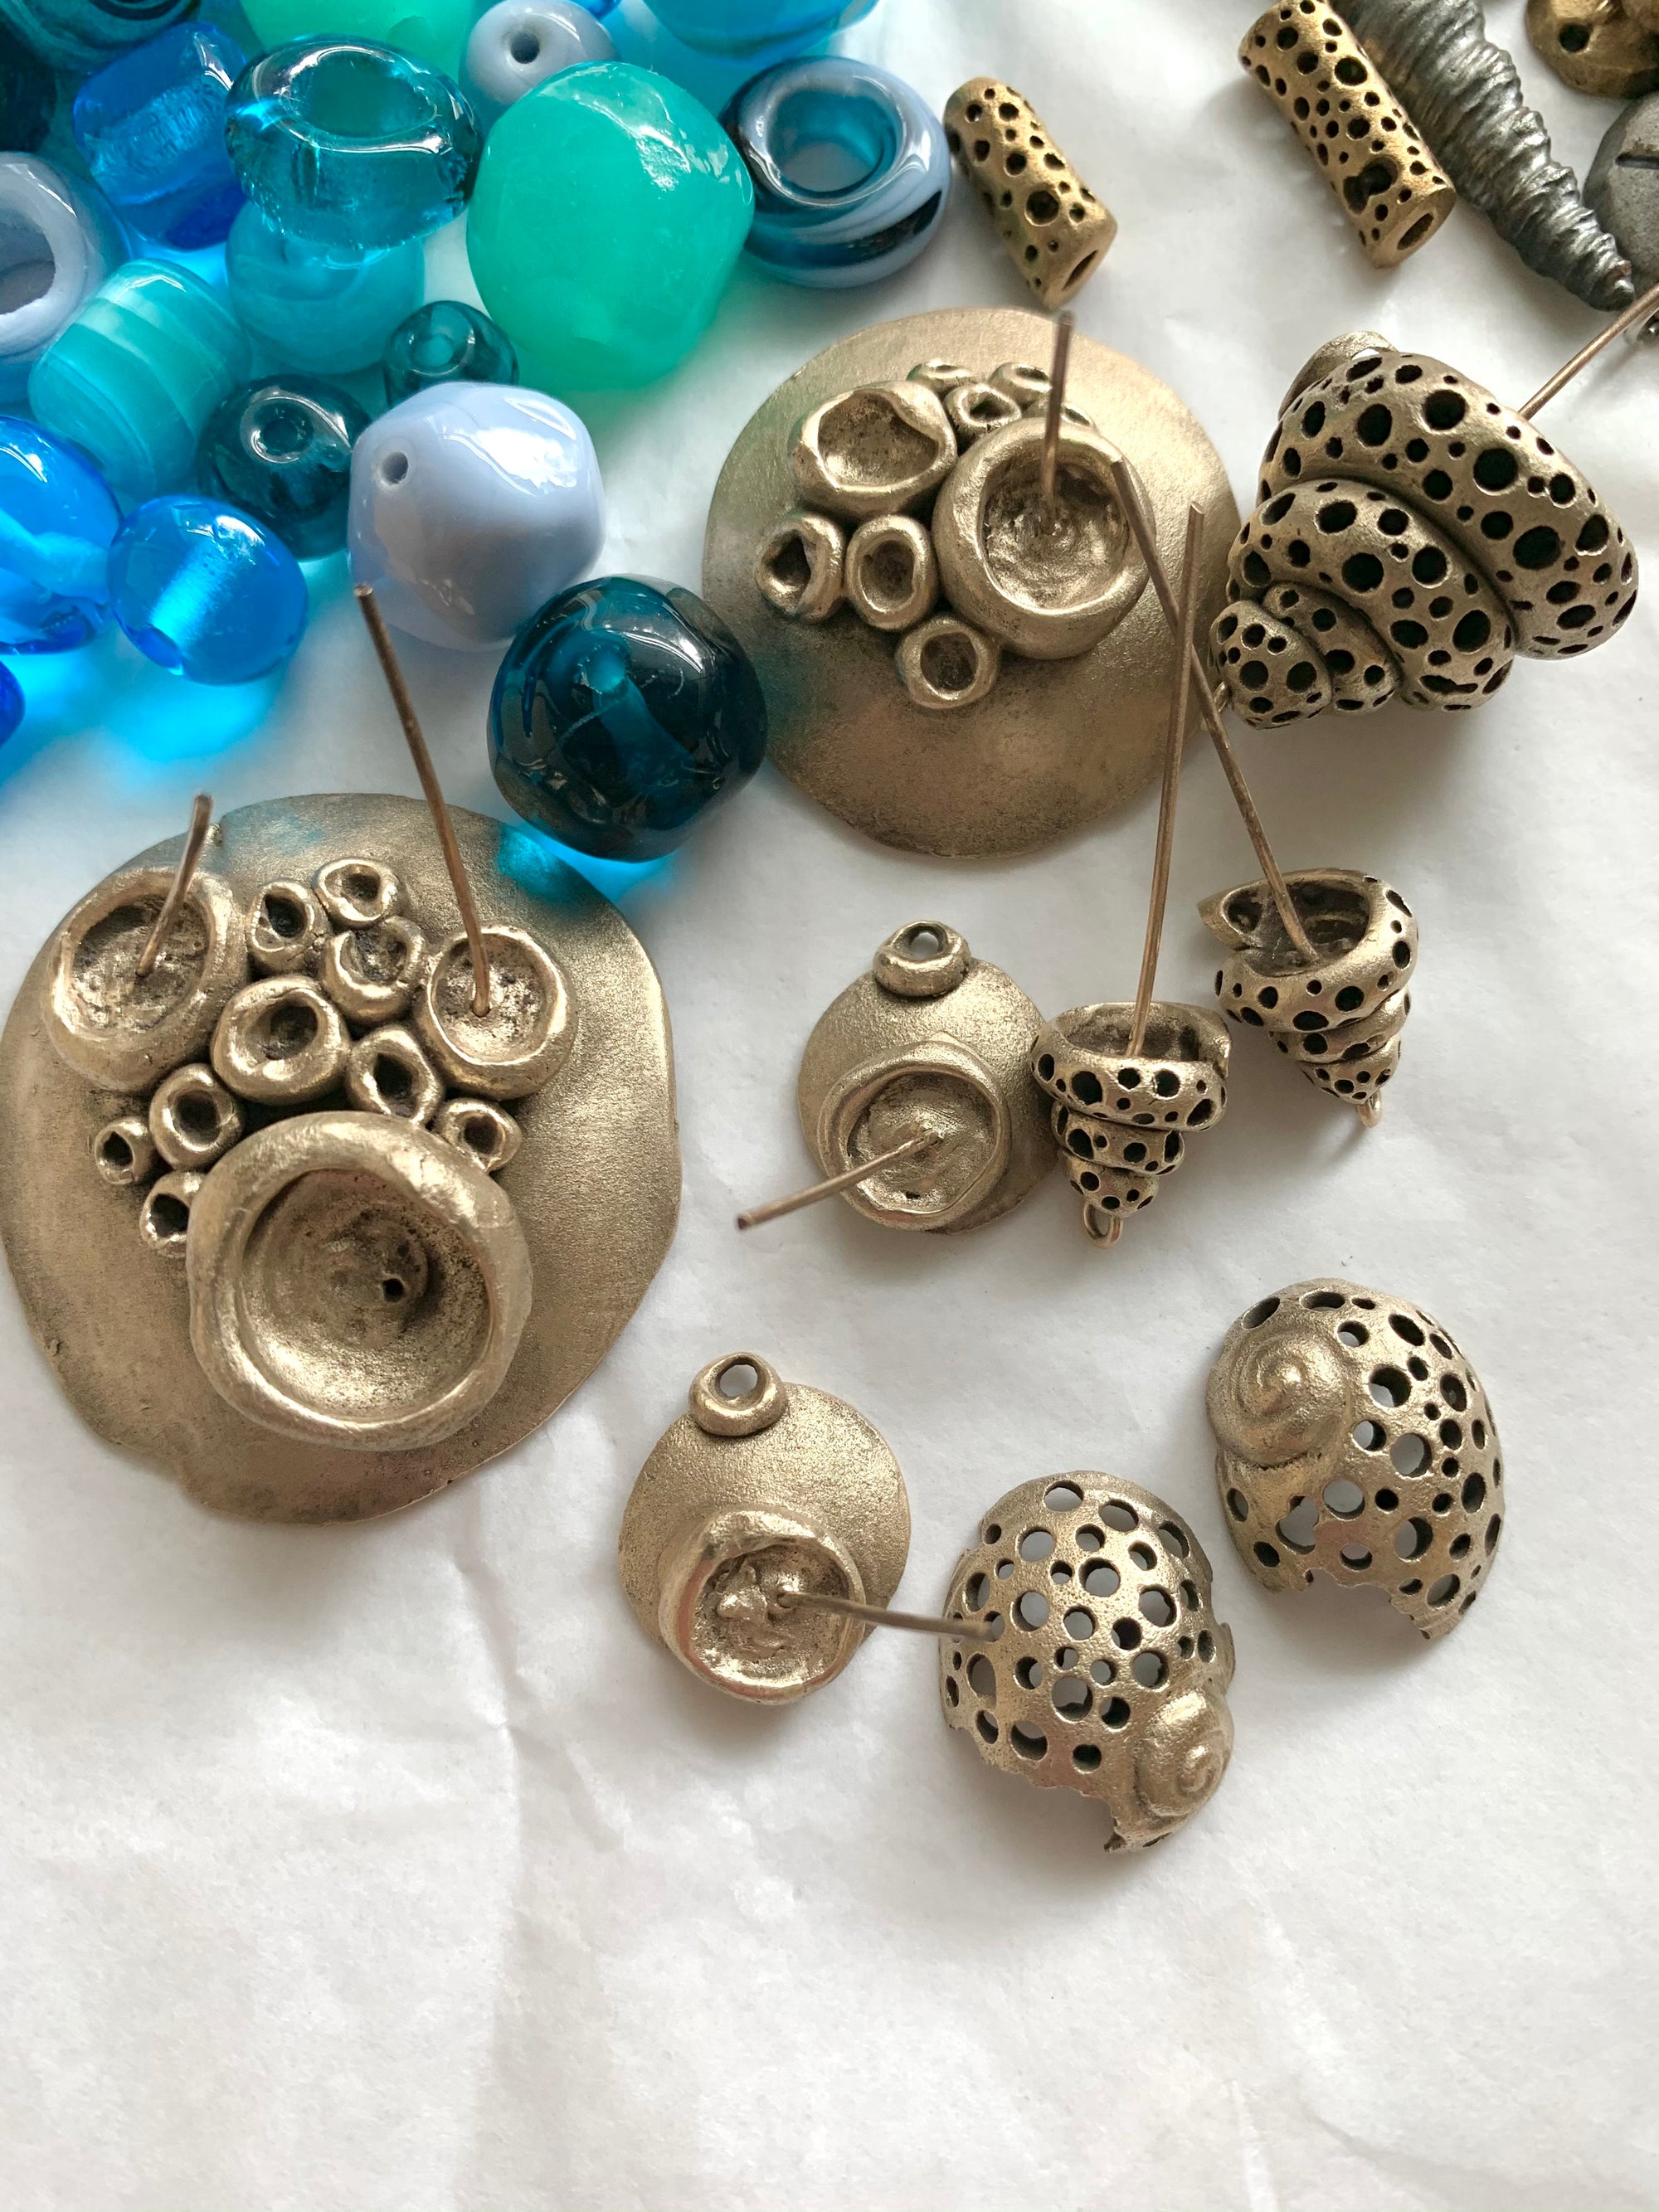 Bronze handmade jewelry and artisan glass beads